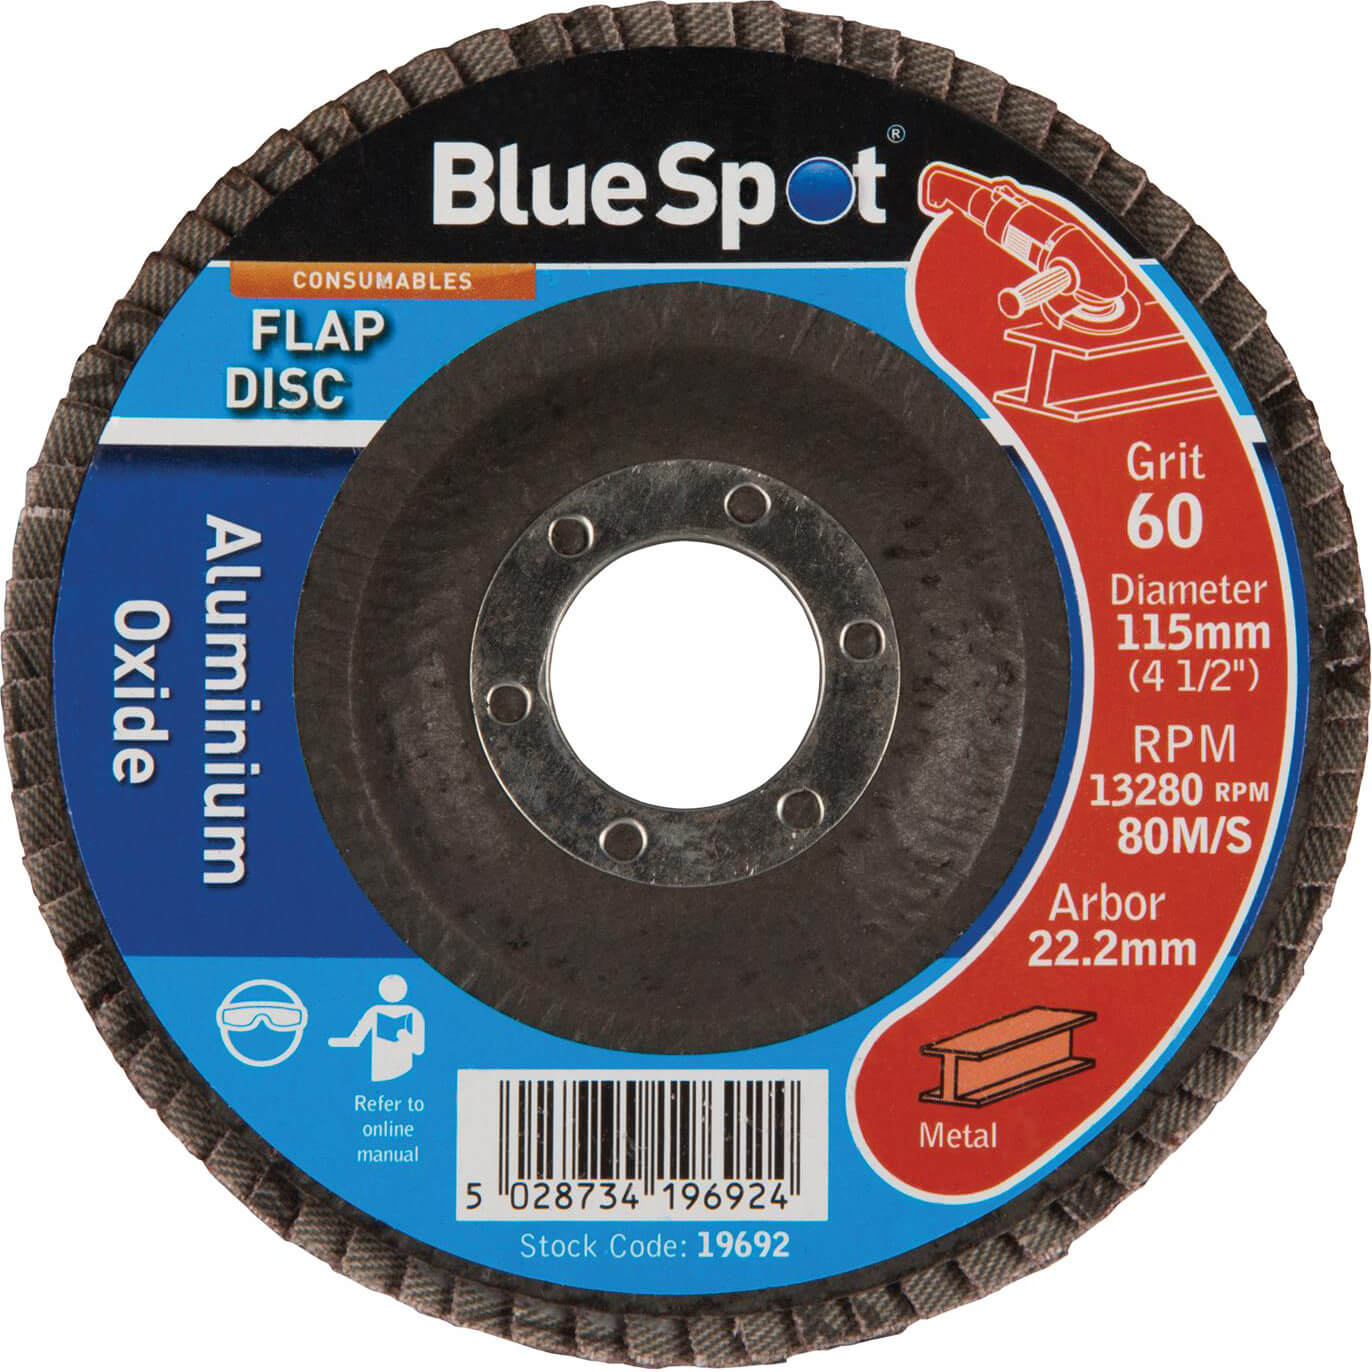 Photo of Bluespot Flap Disc 115mm 115mm 60g